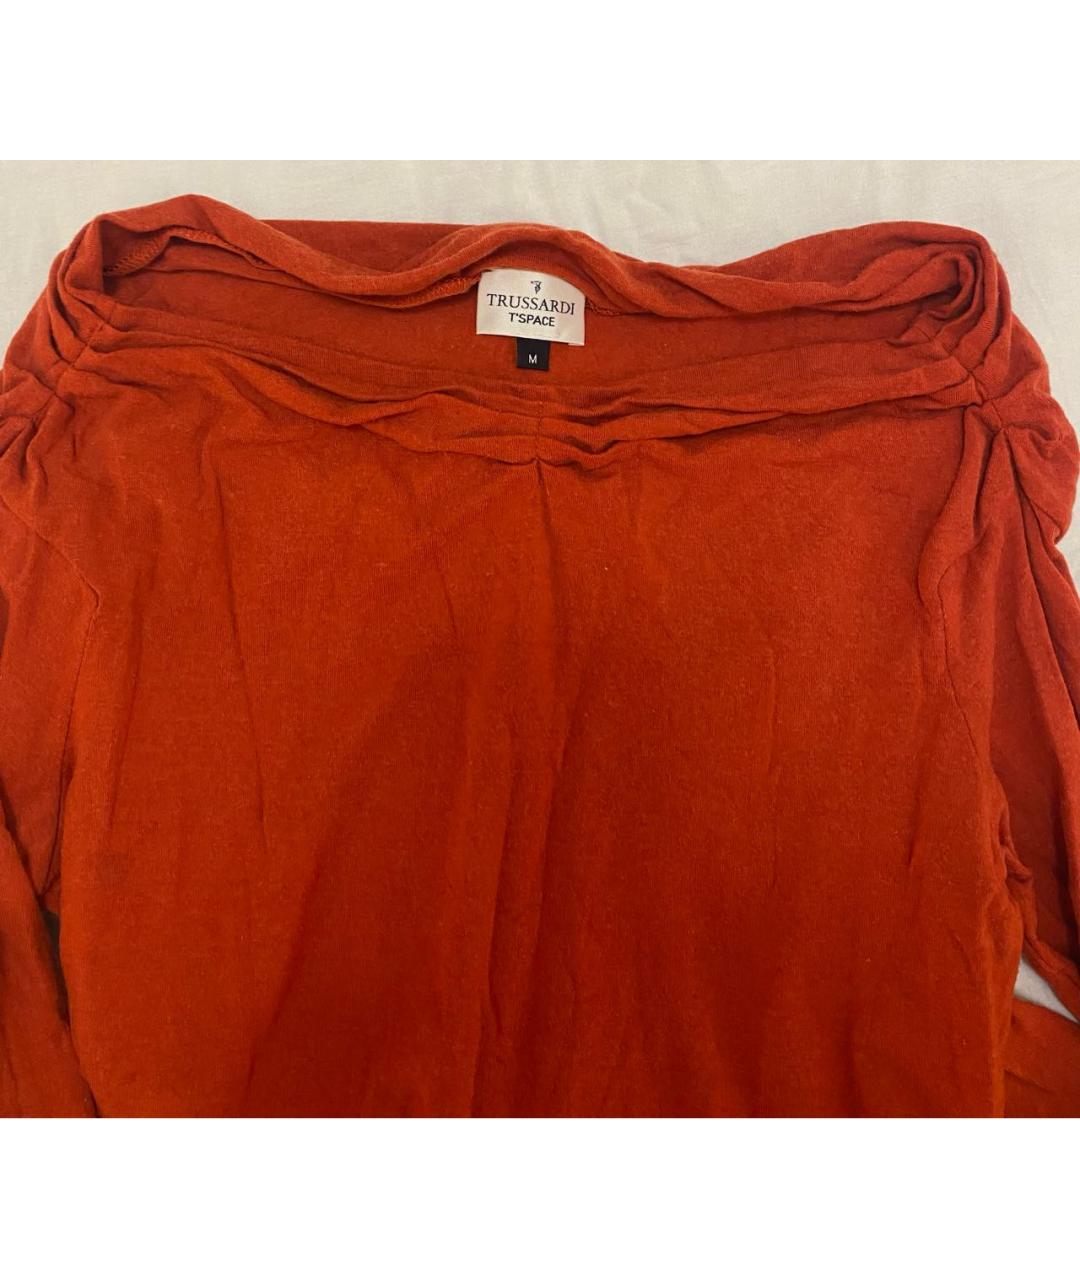 TRUSSARDI JEANS Оранжевый вискозный джемпер / свитер, фото 2